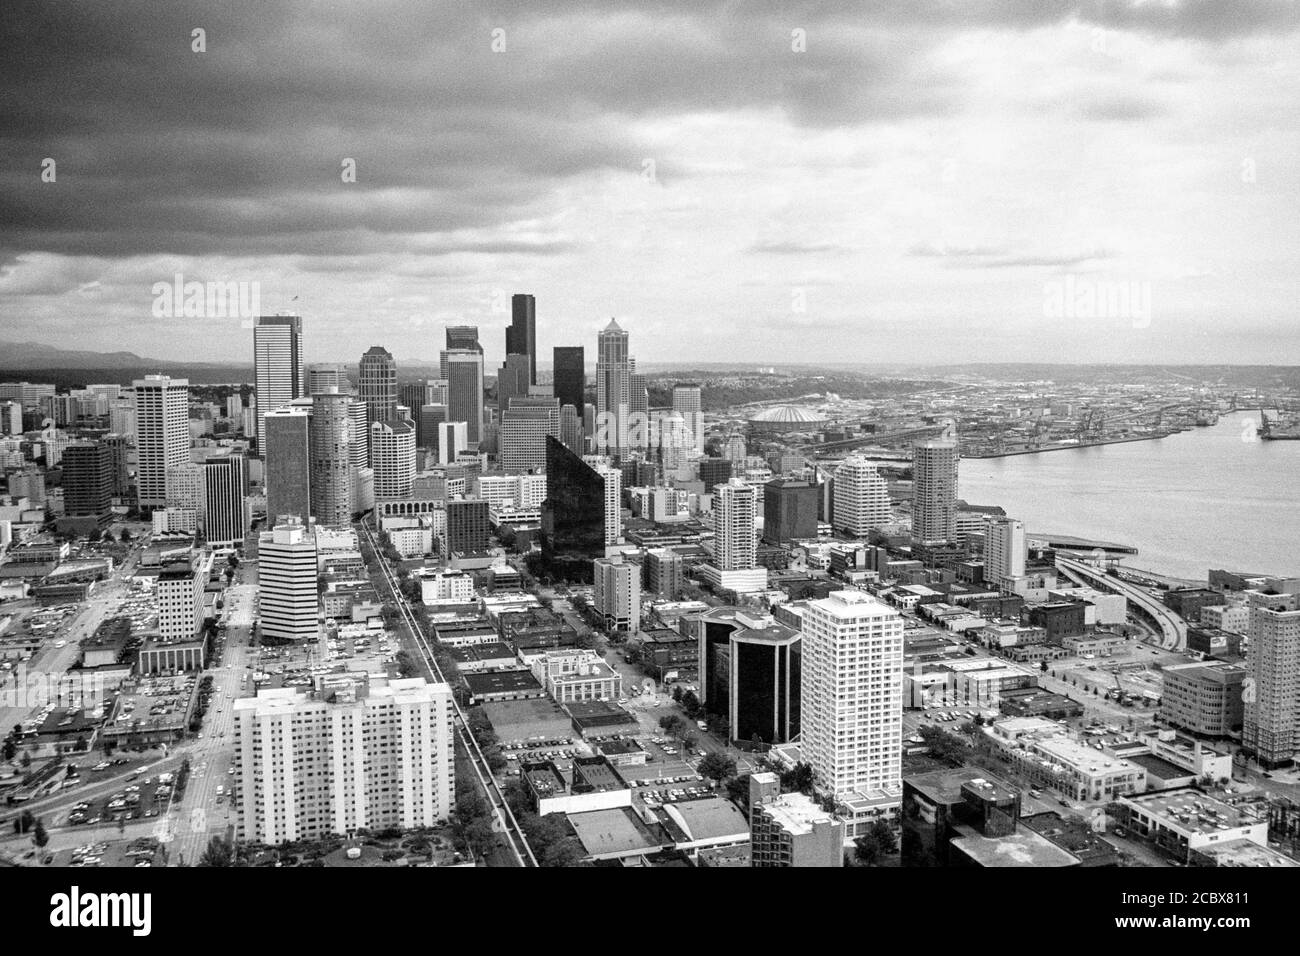 Archivio bianco e nero 1992 paesaggio urbano degli edifici del centro e del litorale dell'oceano pacifico a Seattle, Washington, Stati Uniti d'America. Foto Stock